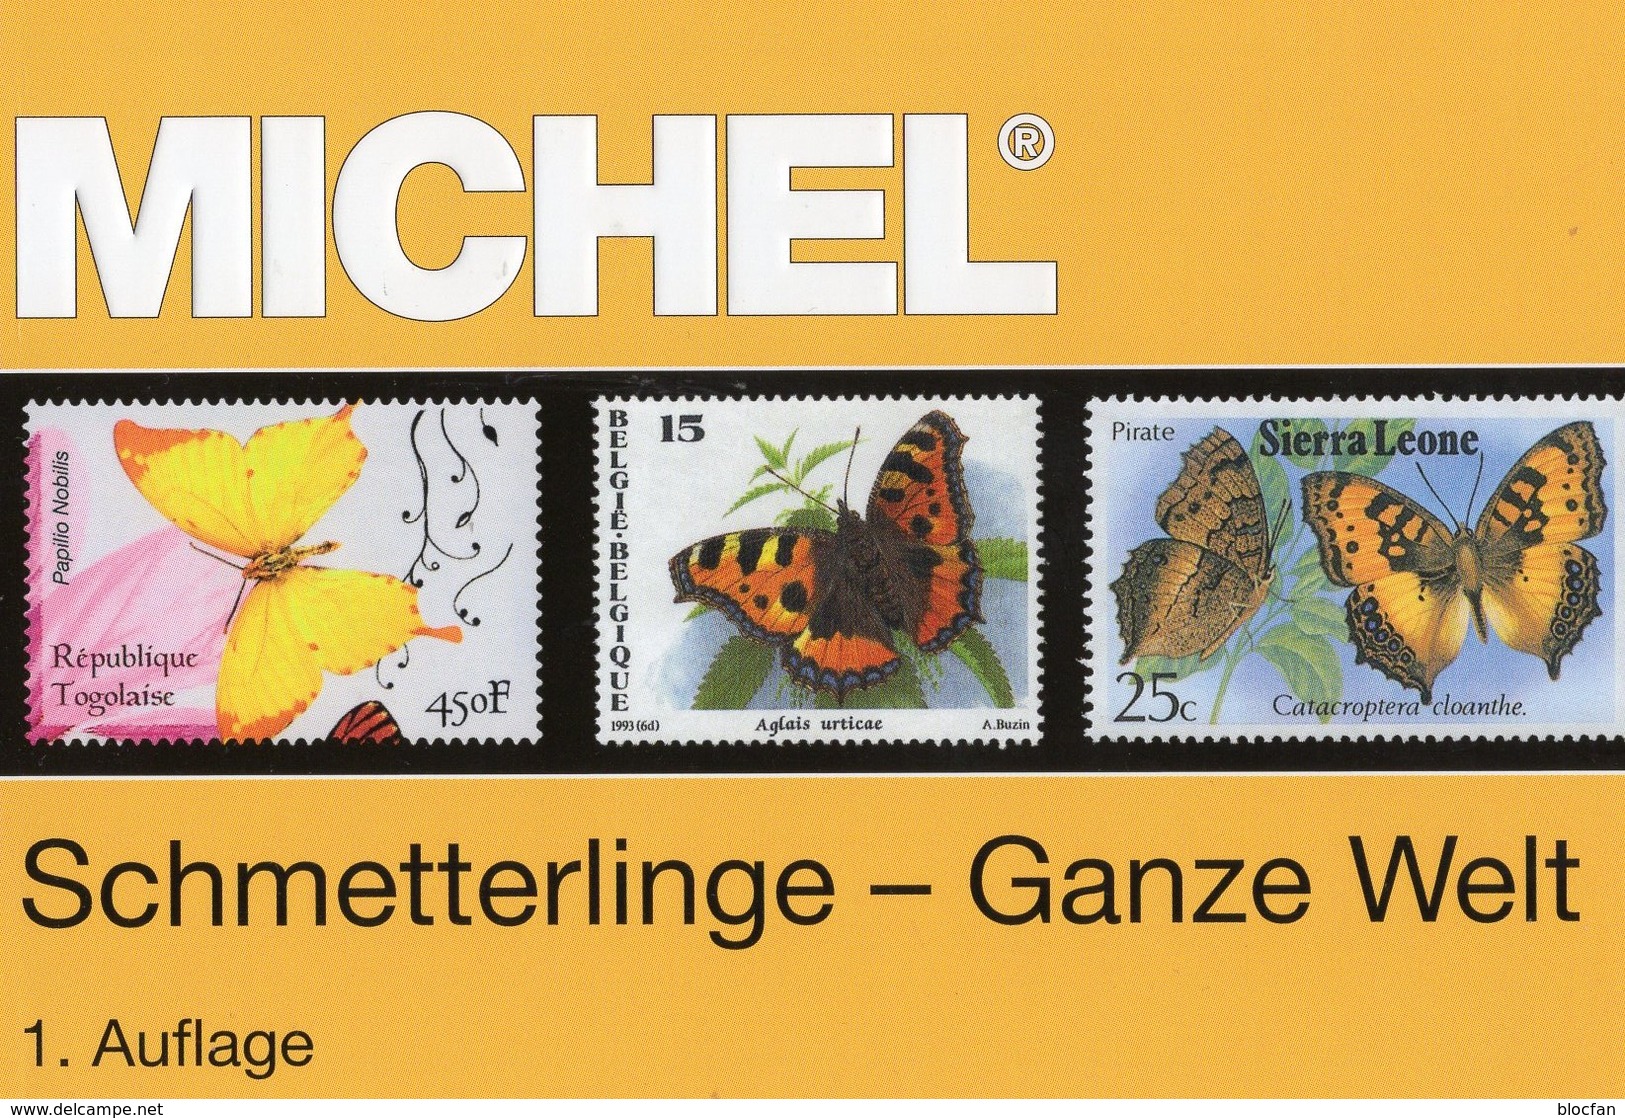 MlCHEL Kataloge Schmetterlinge+Vögel 2017 Briefmarken new 134€ WWF fauna stamp bird/butterfly 2 catalogue of topics